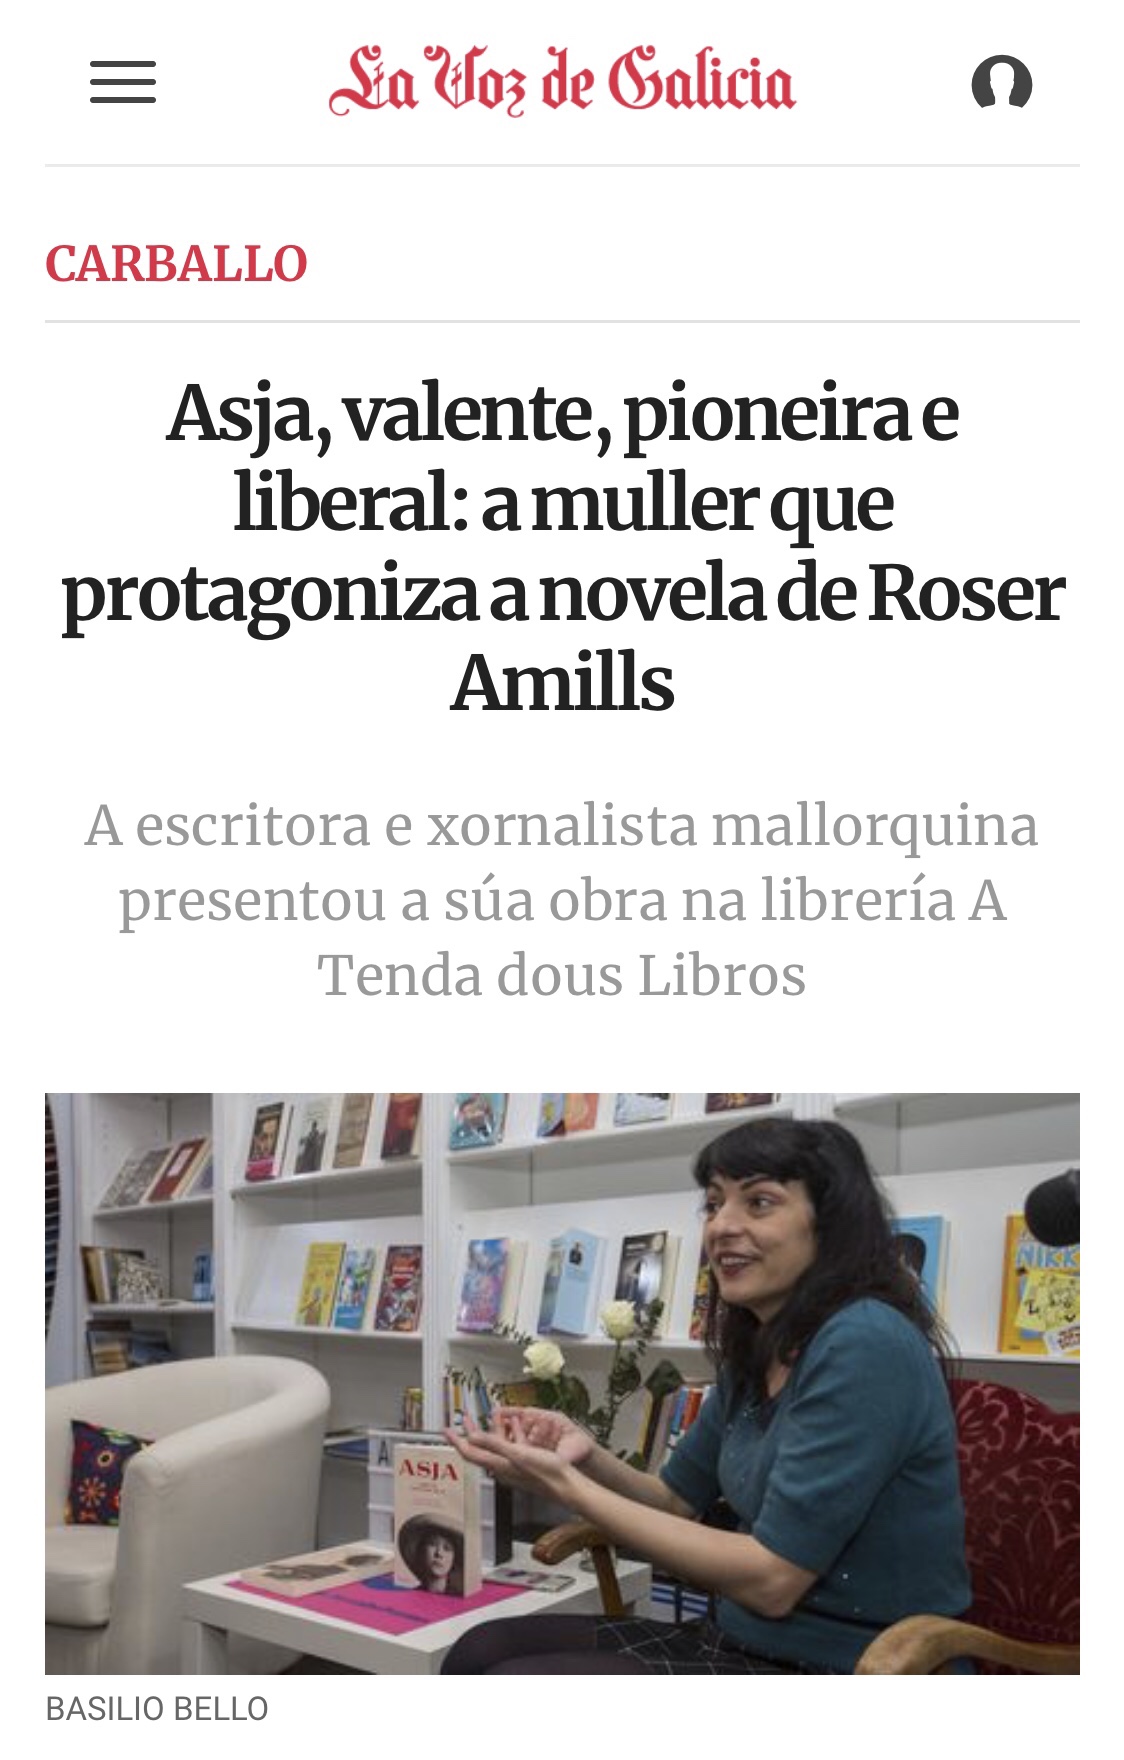 La Voz de Galicia | Asja, valente, pioneira e liberal: a muller que protagoniza a novela de Roser Amills